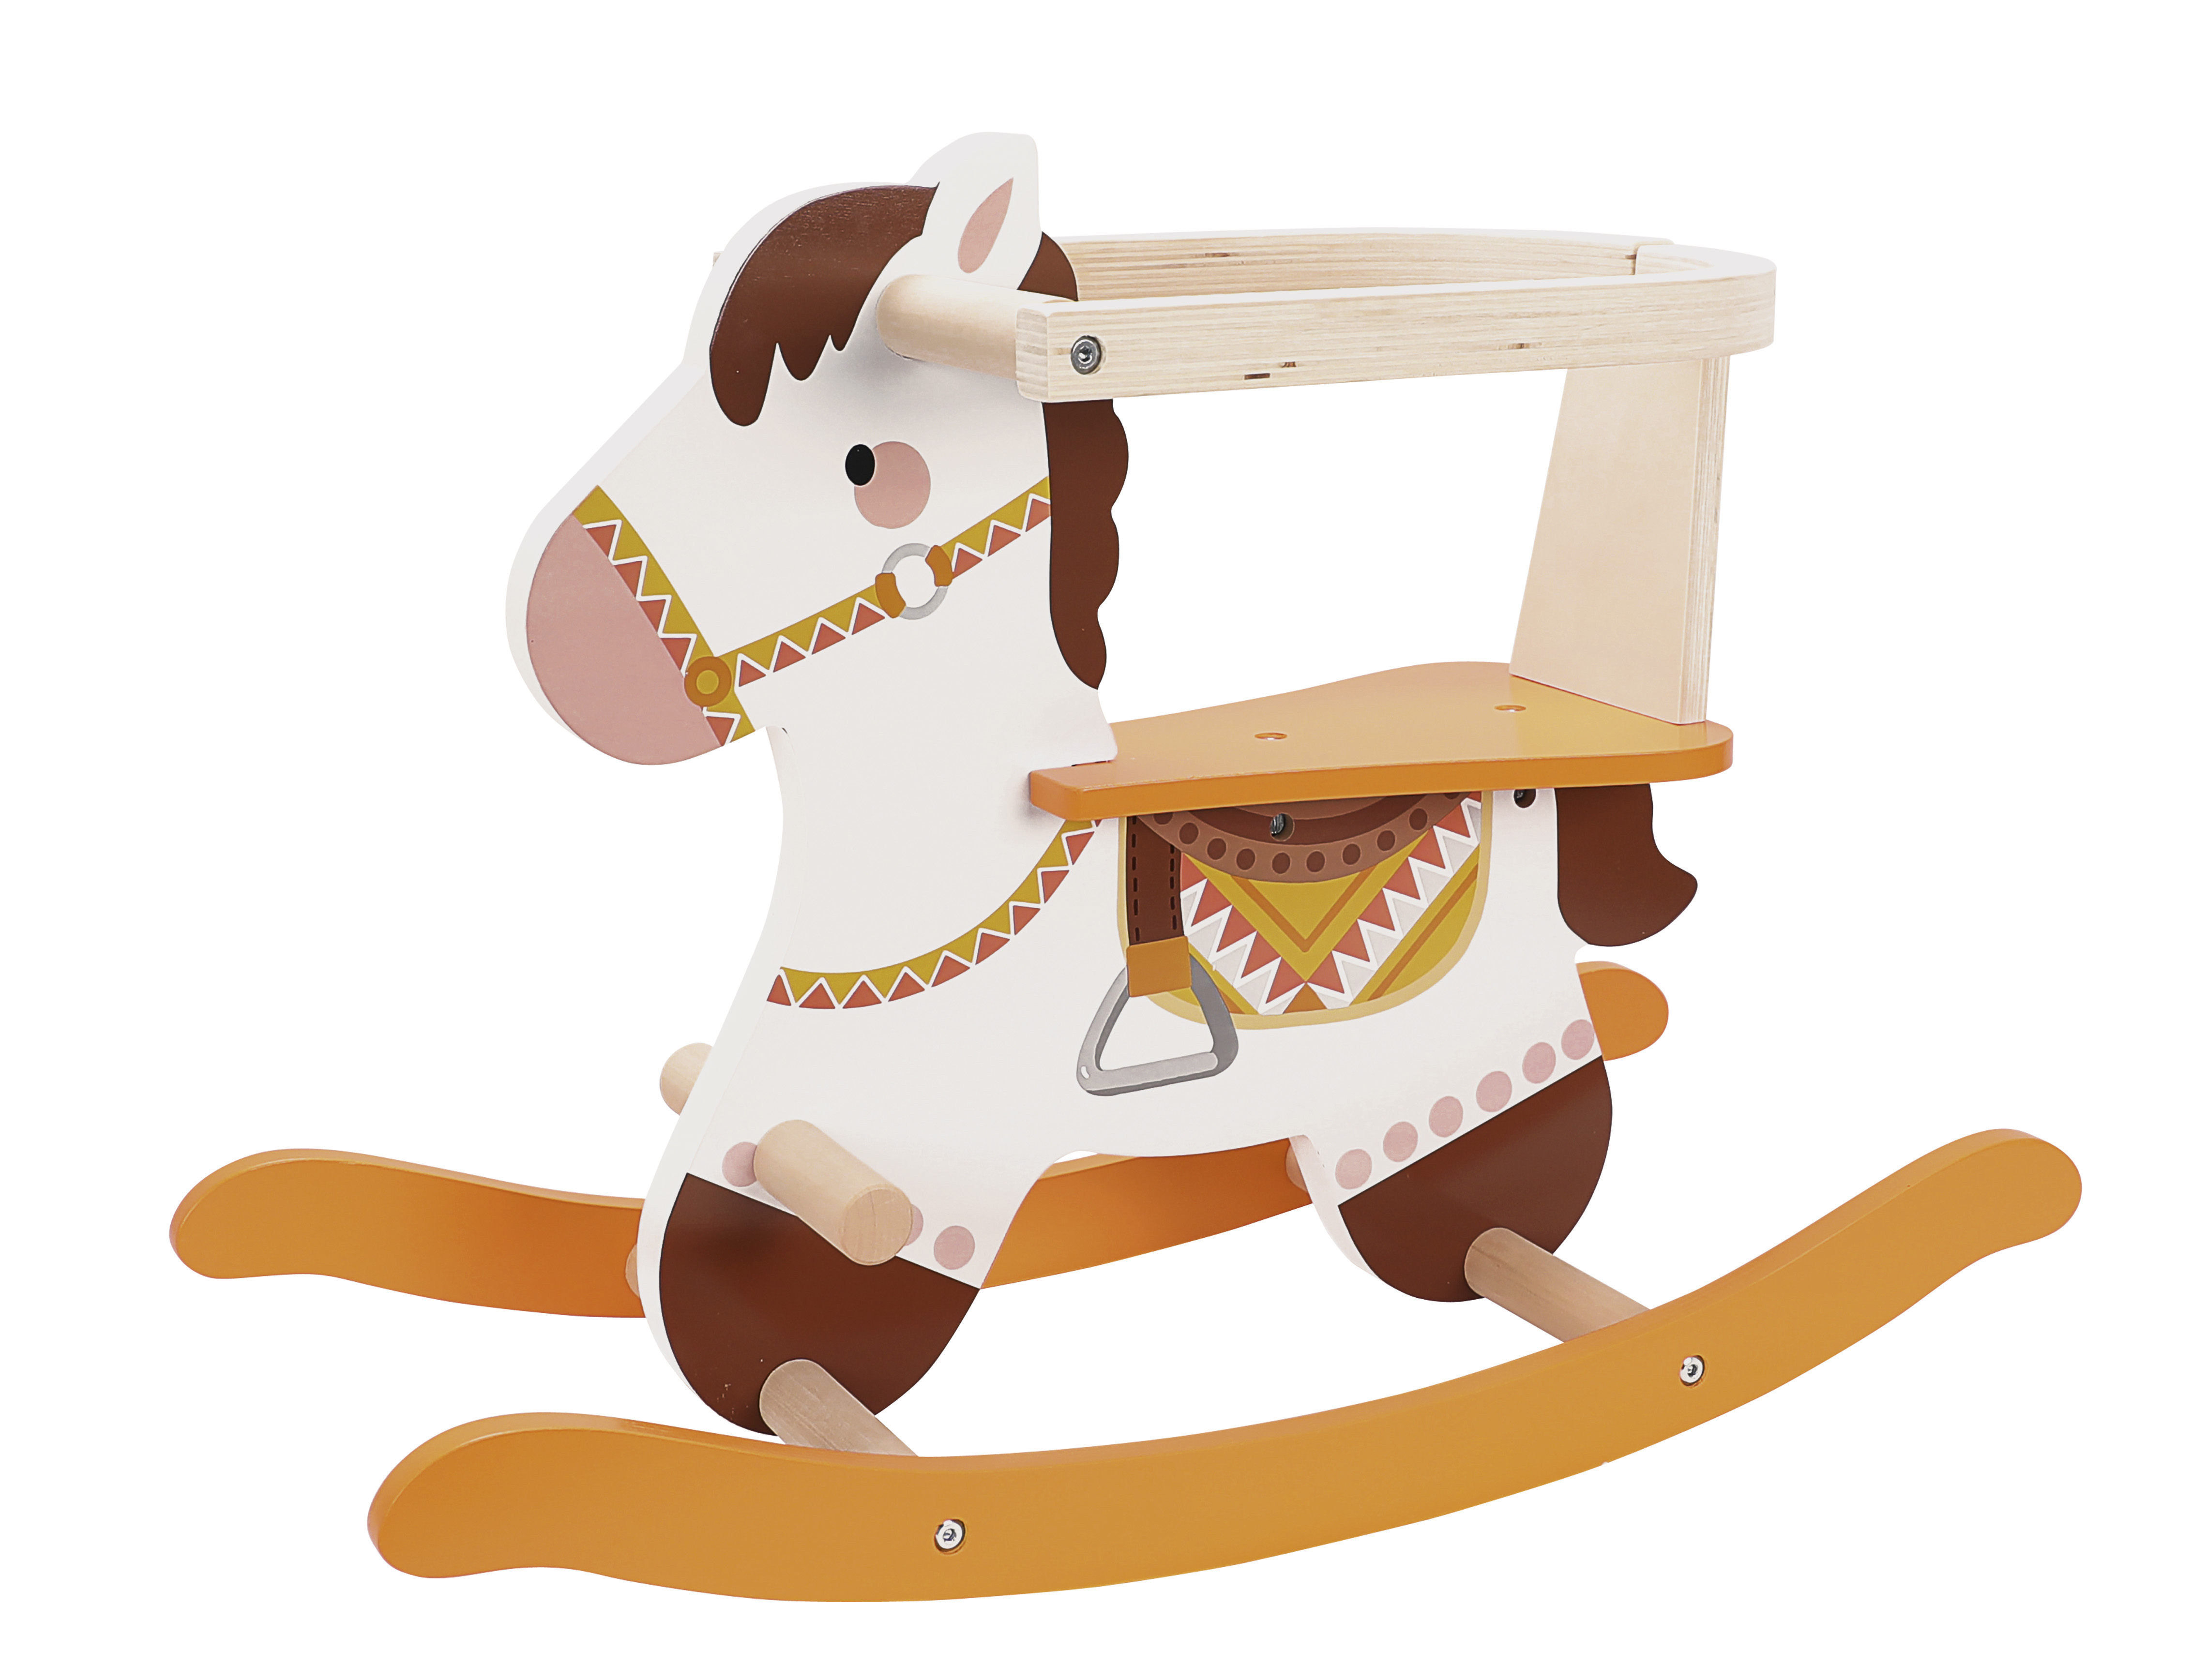 Cavallo a dondolo in legno per bambini con le renghiere - Franco carino  Leomark IT